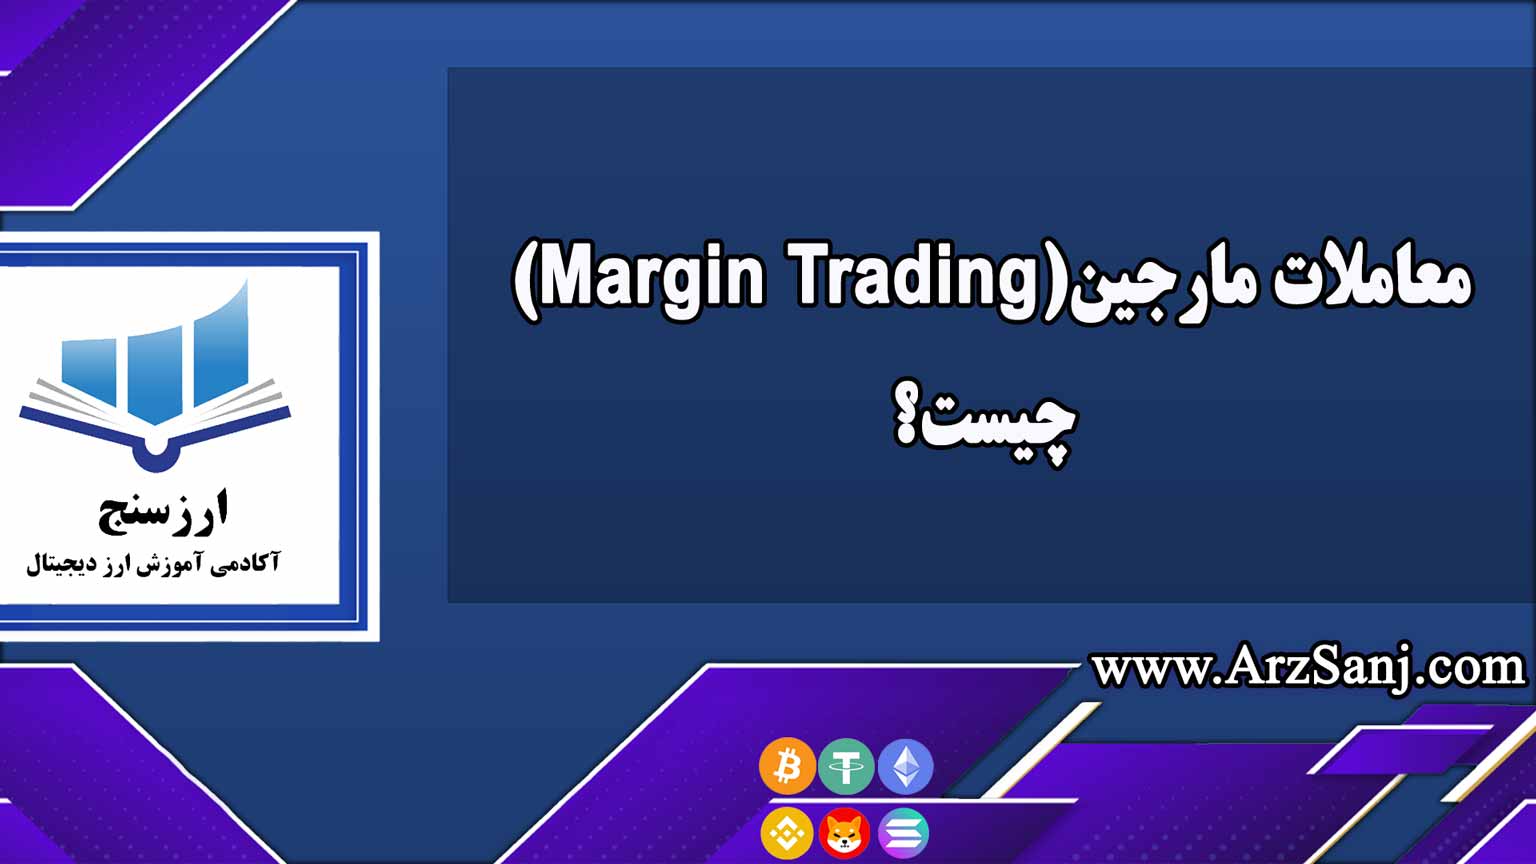 معاملات مارجین(Margin Trading) چیست؟